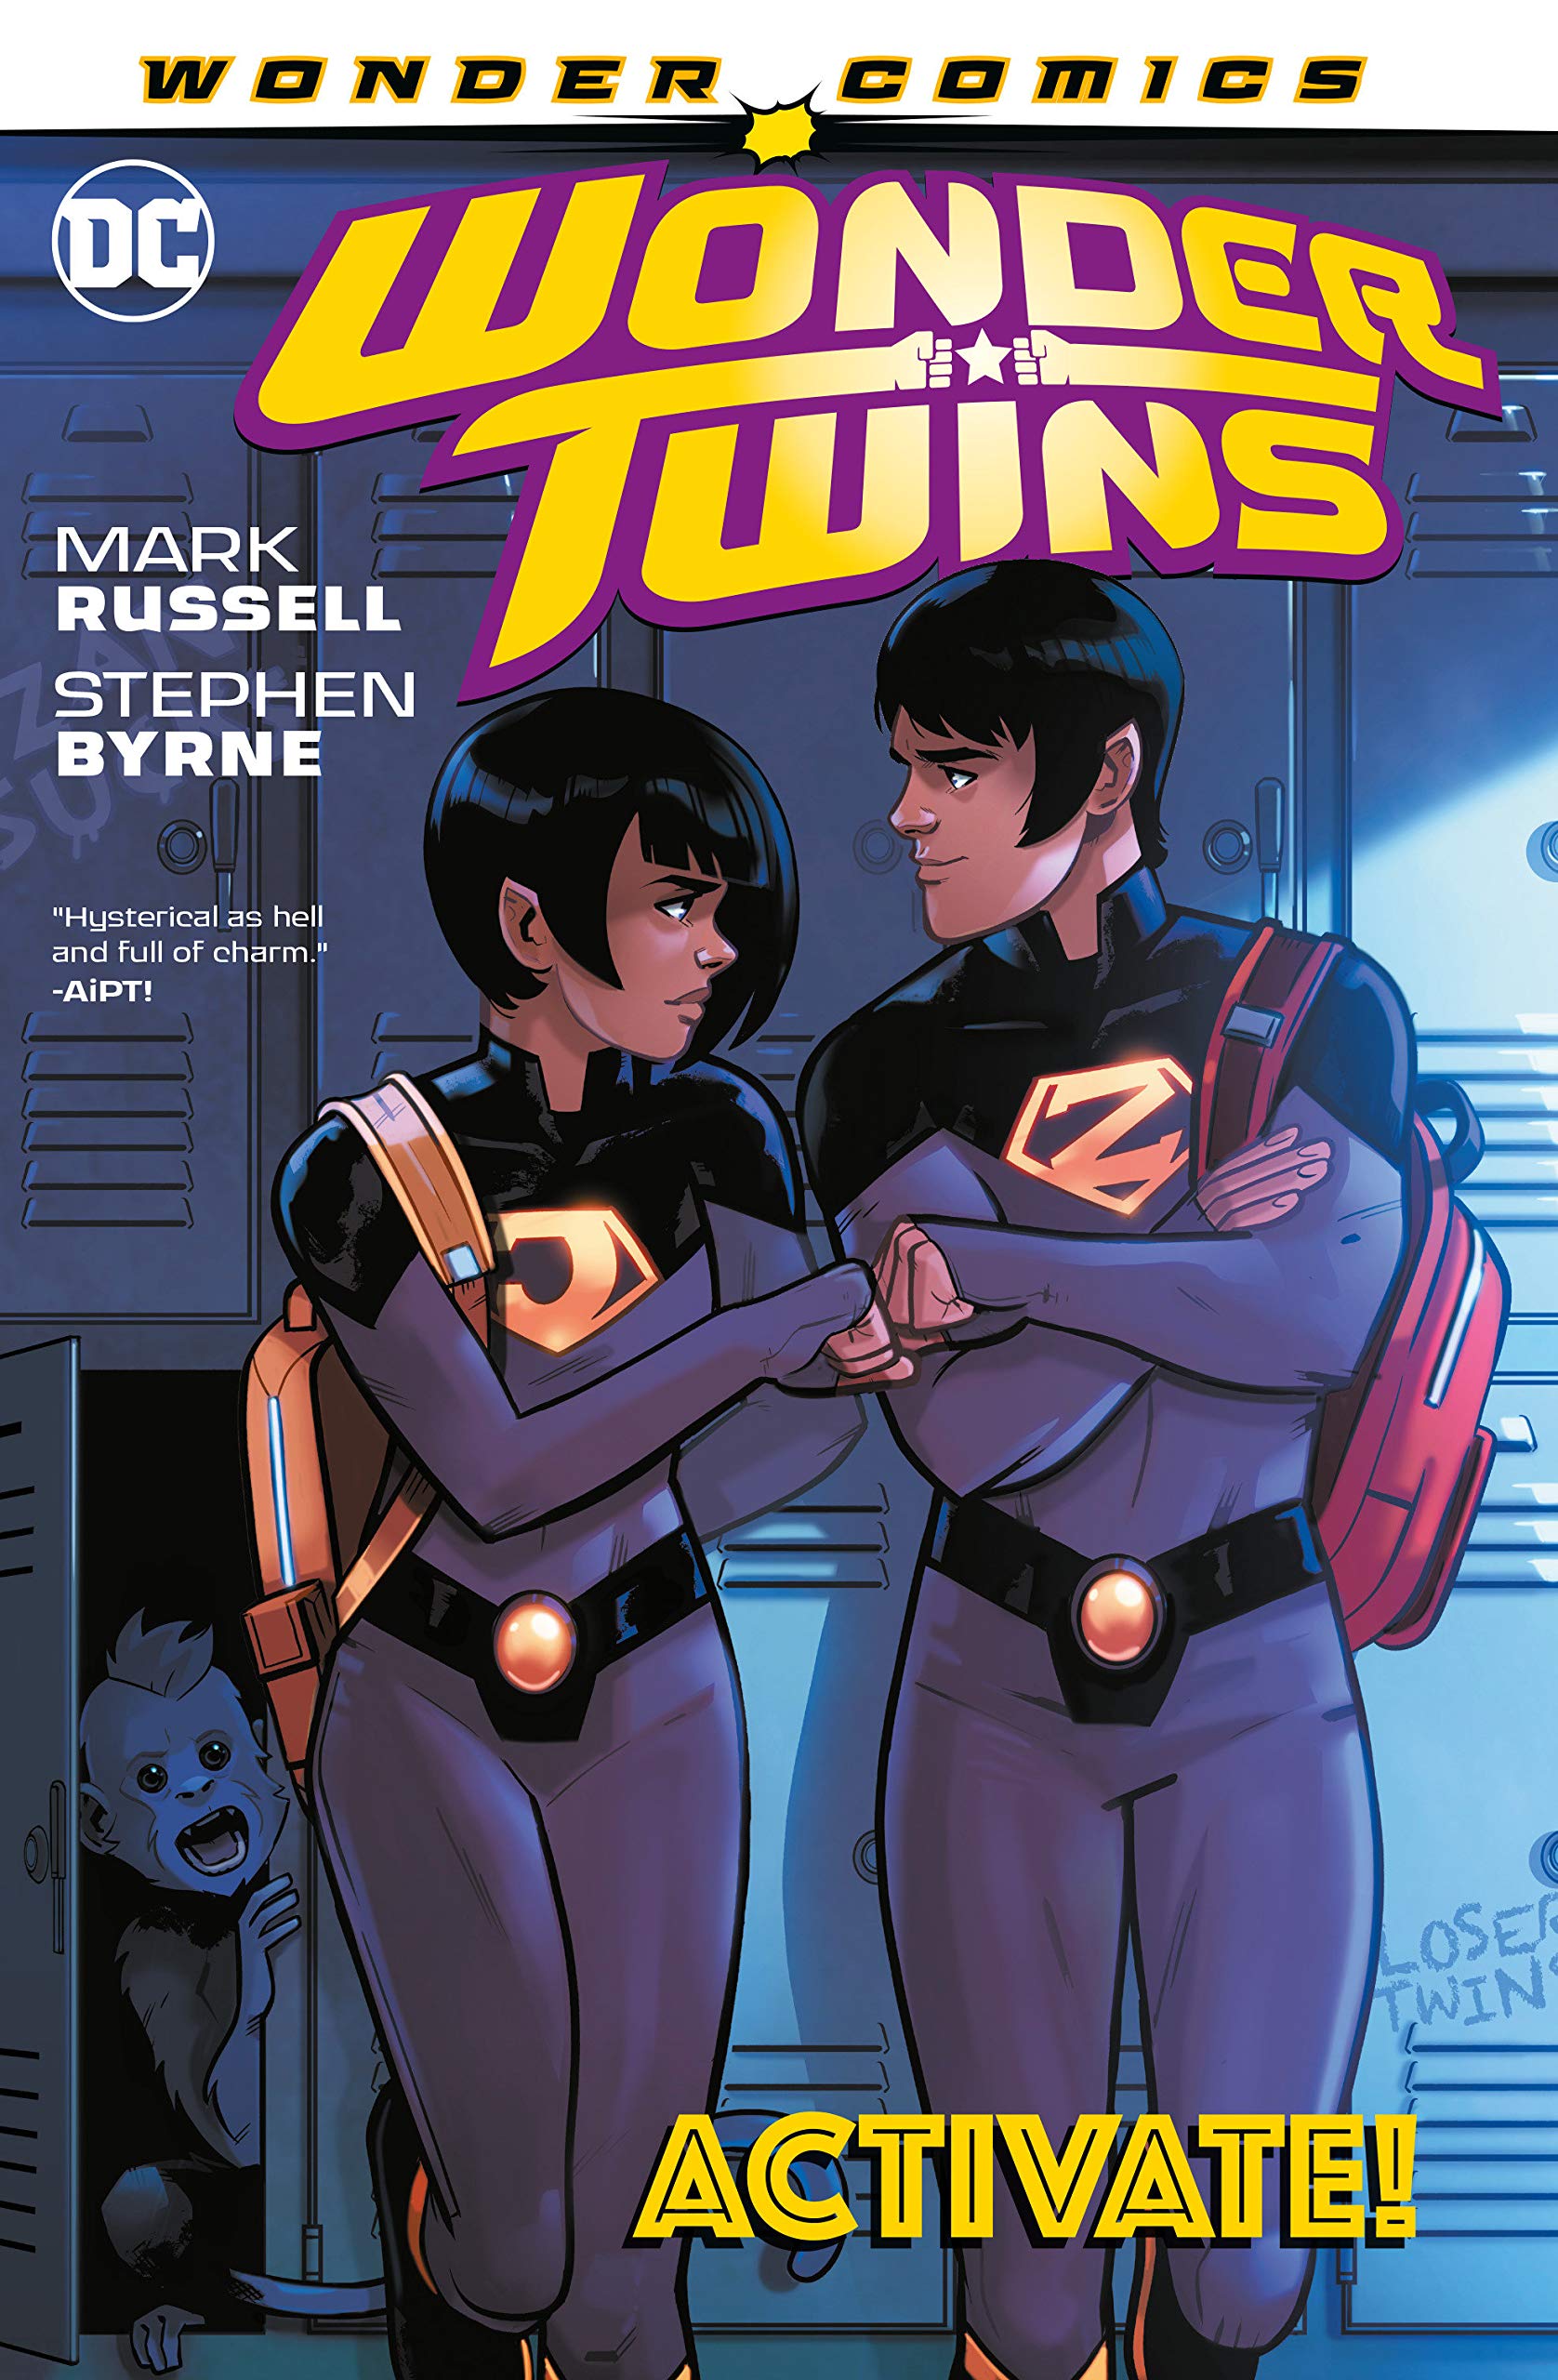 以DC漫画人物“神奇双胞胎”为主人公的拍摄项目已率先被叫停